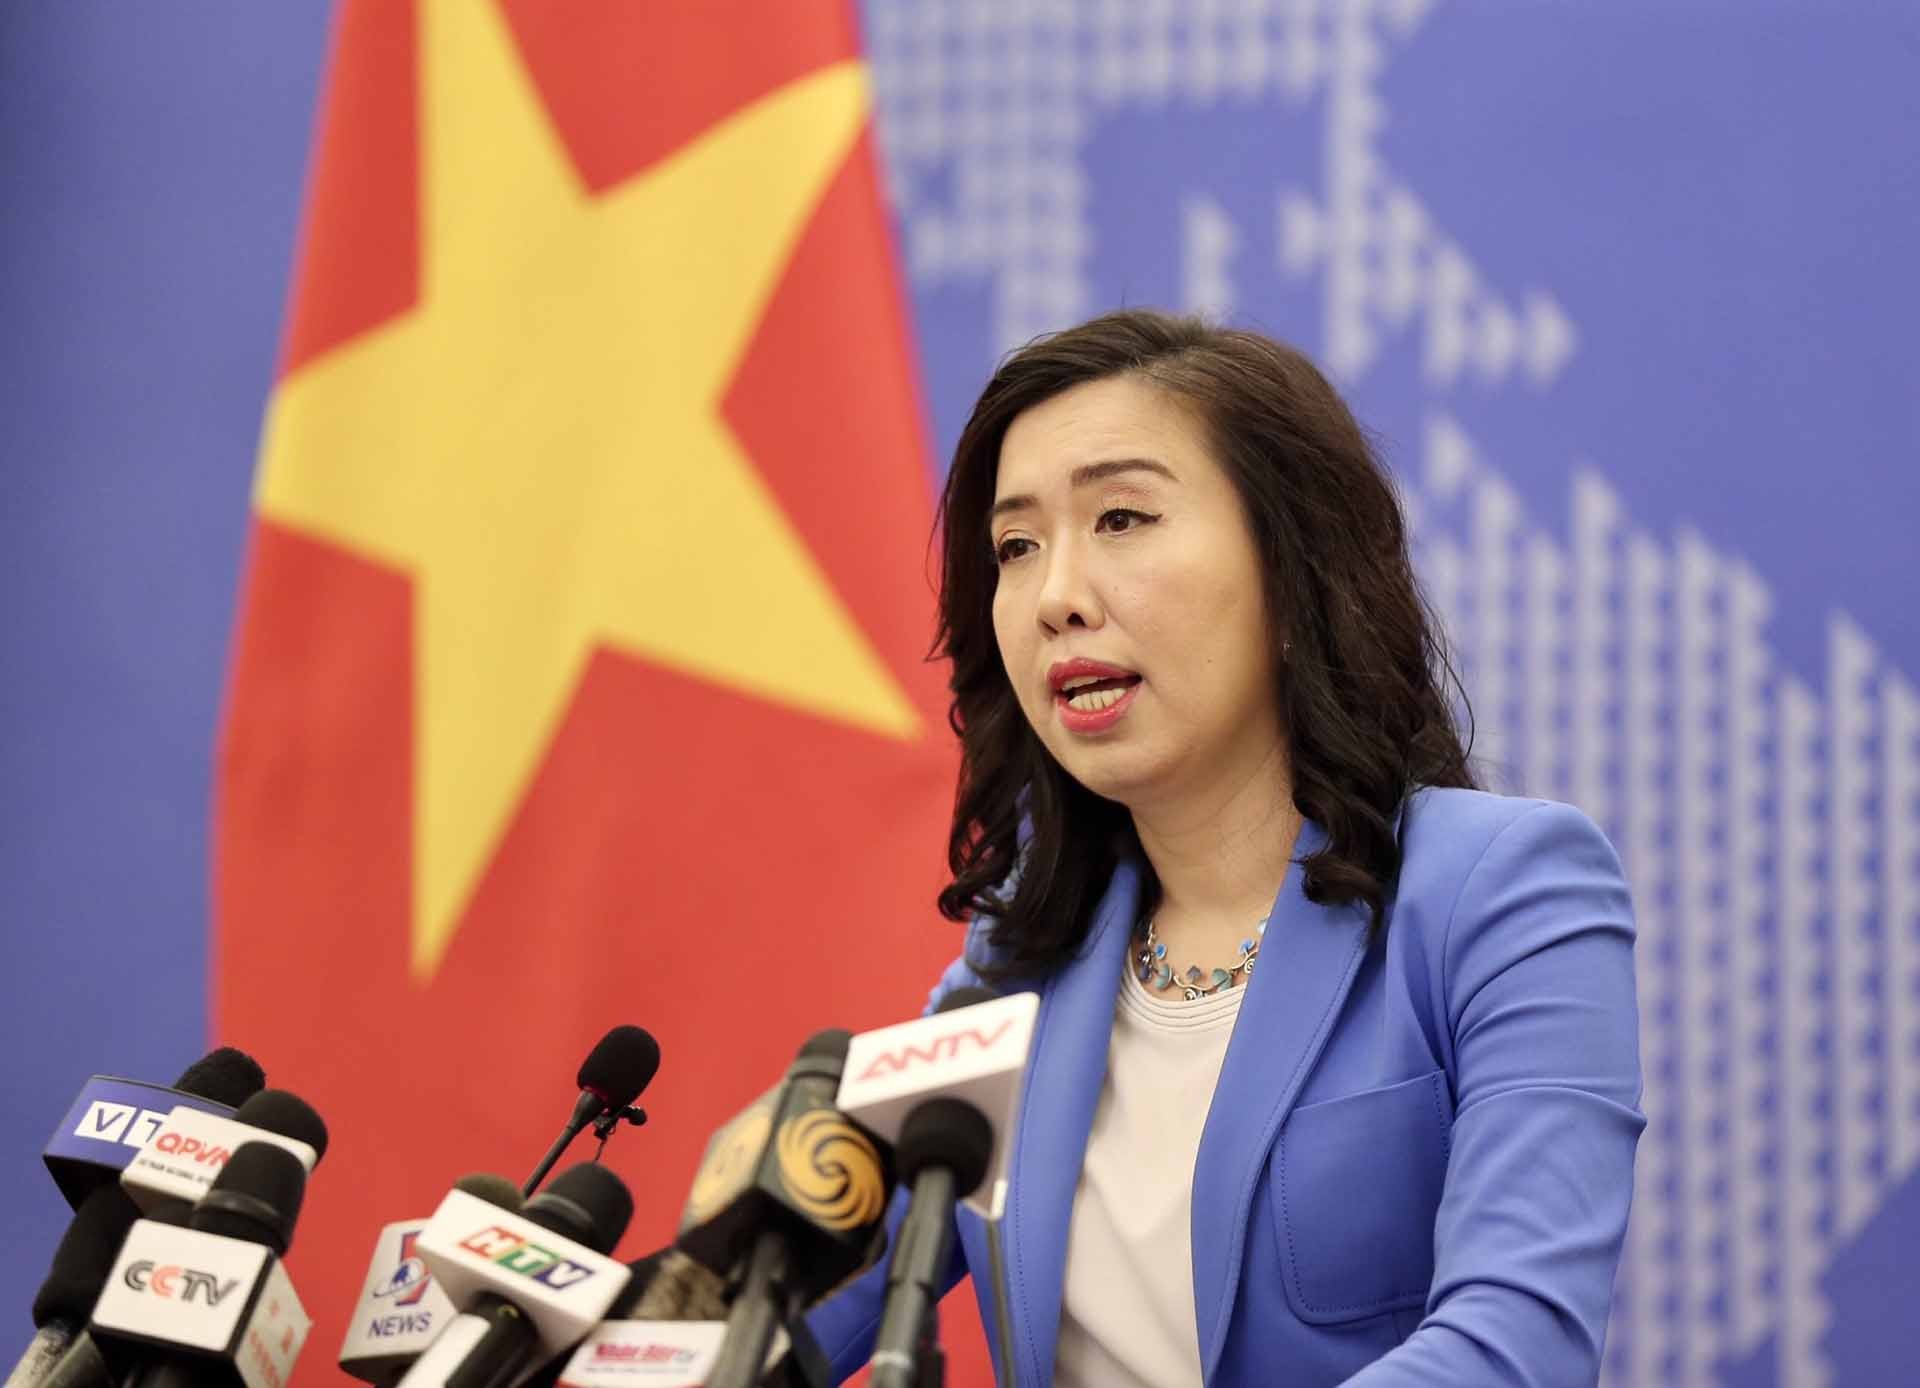 Việt Nam ghi nhận việc Bộ Ngoại giao Hoa Kỳ công bố Báo cáo số 150 về các ranh giới biển